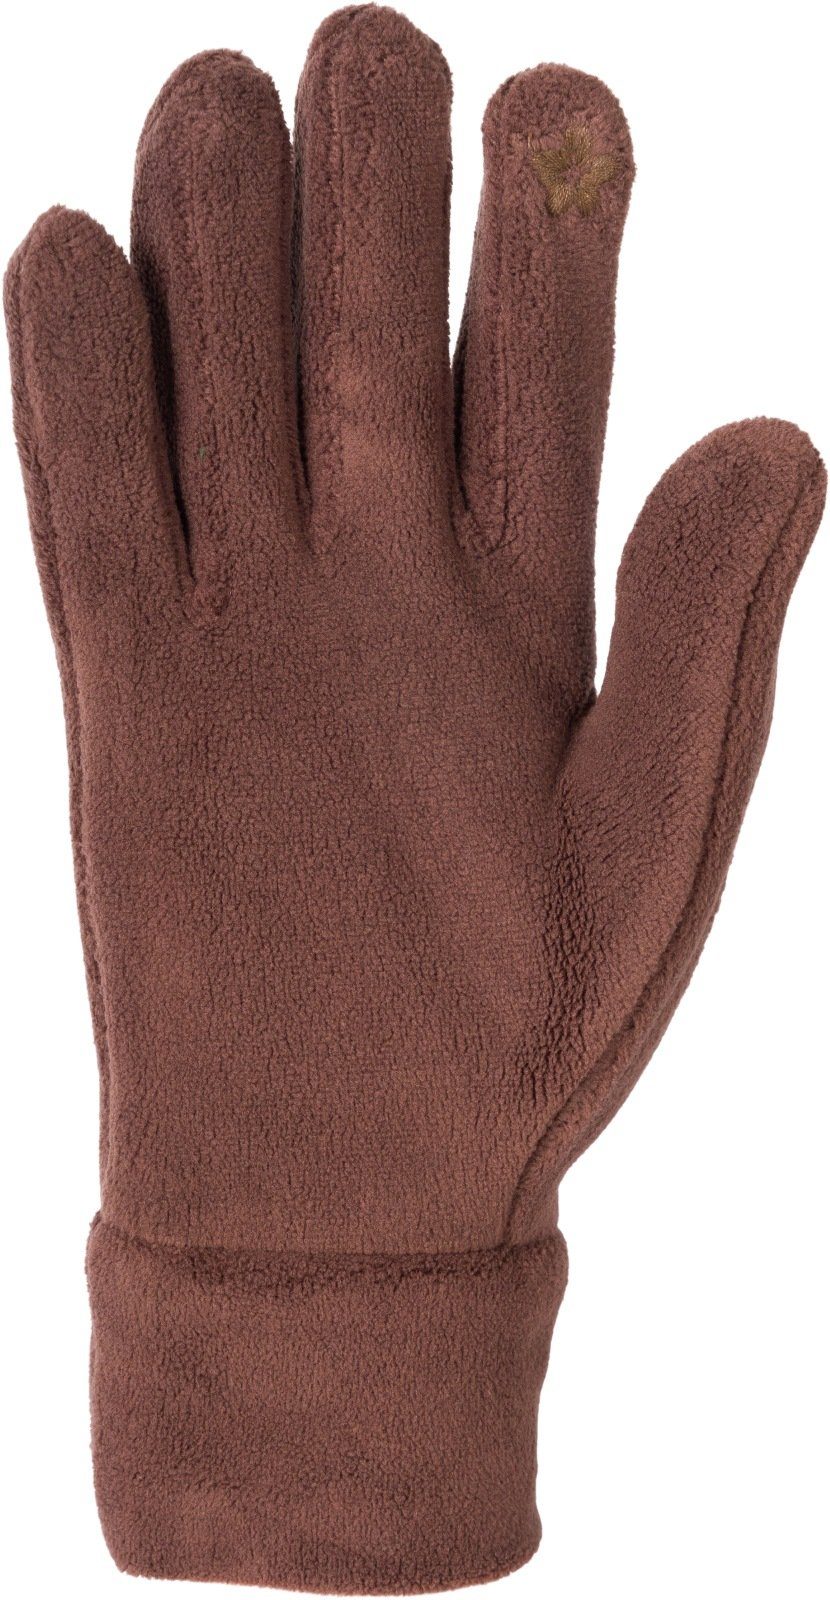 styleBREAKER Fleecehandschuhe Touchscreen Schokobraun Einfarbige Fleece Handschuhe